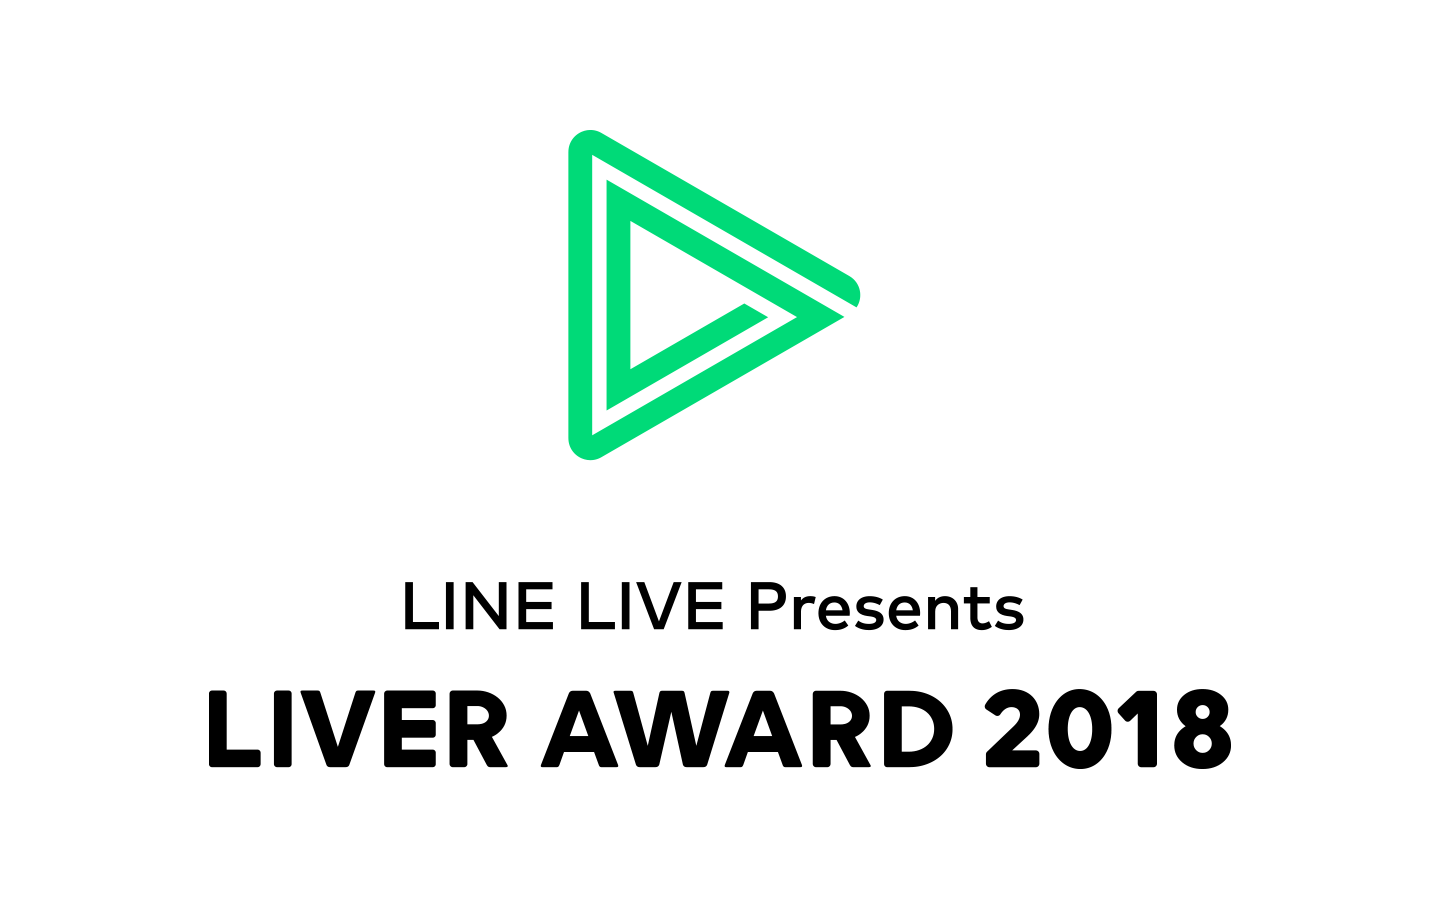 Line Live Presents Liver Award 18 を発表 グランプリは U Key 準グランプリは ふうか Age に決定 Line株式会社のプレスリリース